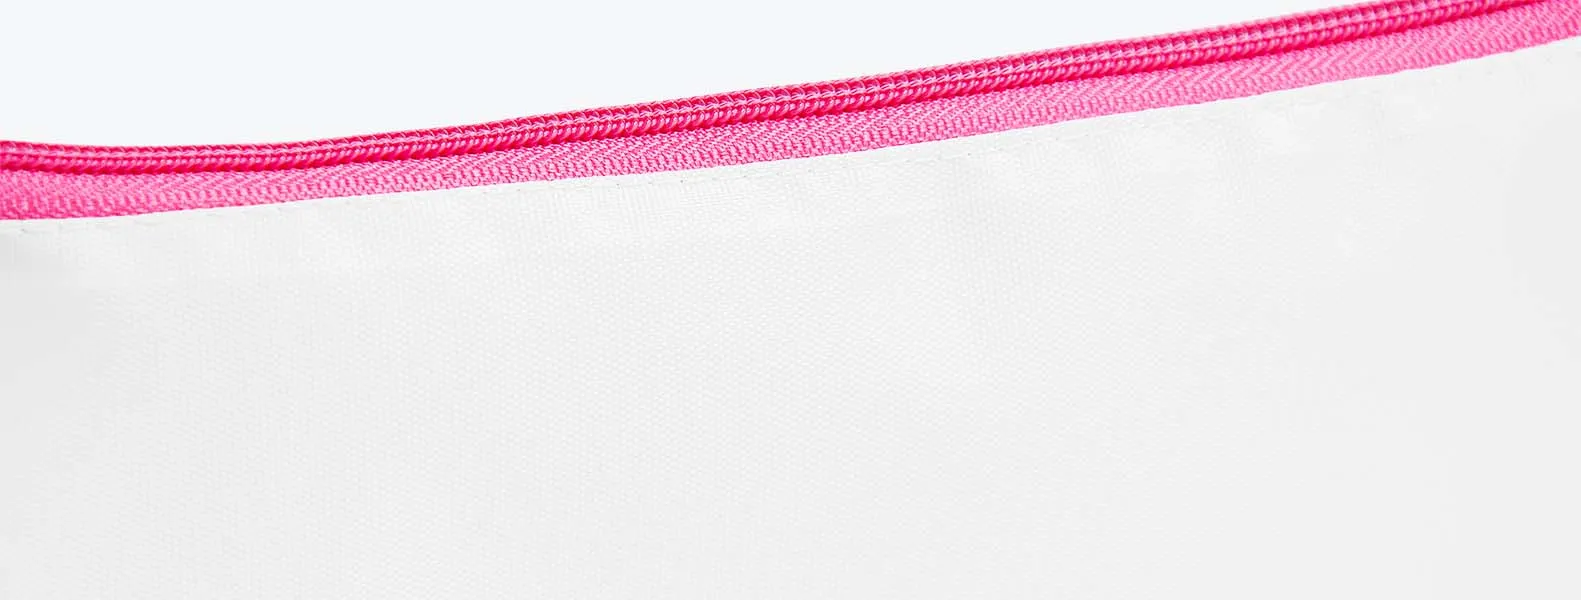 Necessaire com zíper rosa confeccionada em Nylon 210 resinado. Conta com fechamento em zíper nas cores preta, azul, vermelha, verde, amarelo, laranja, roxo e rosa.